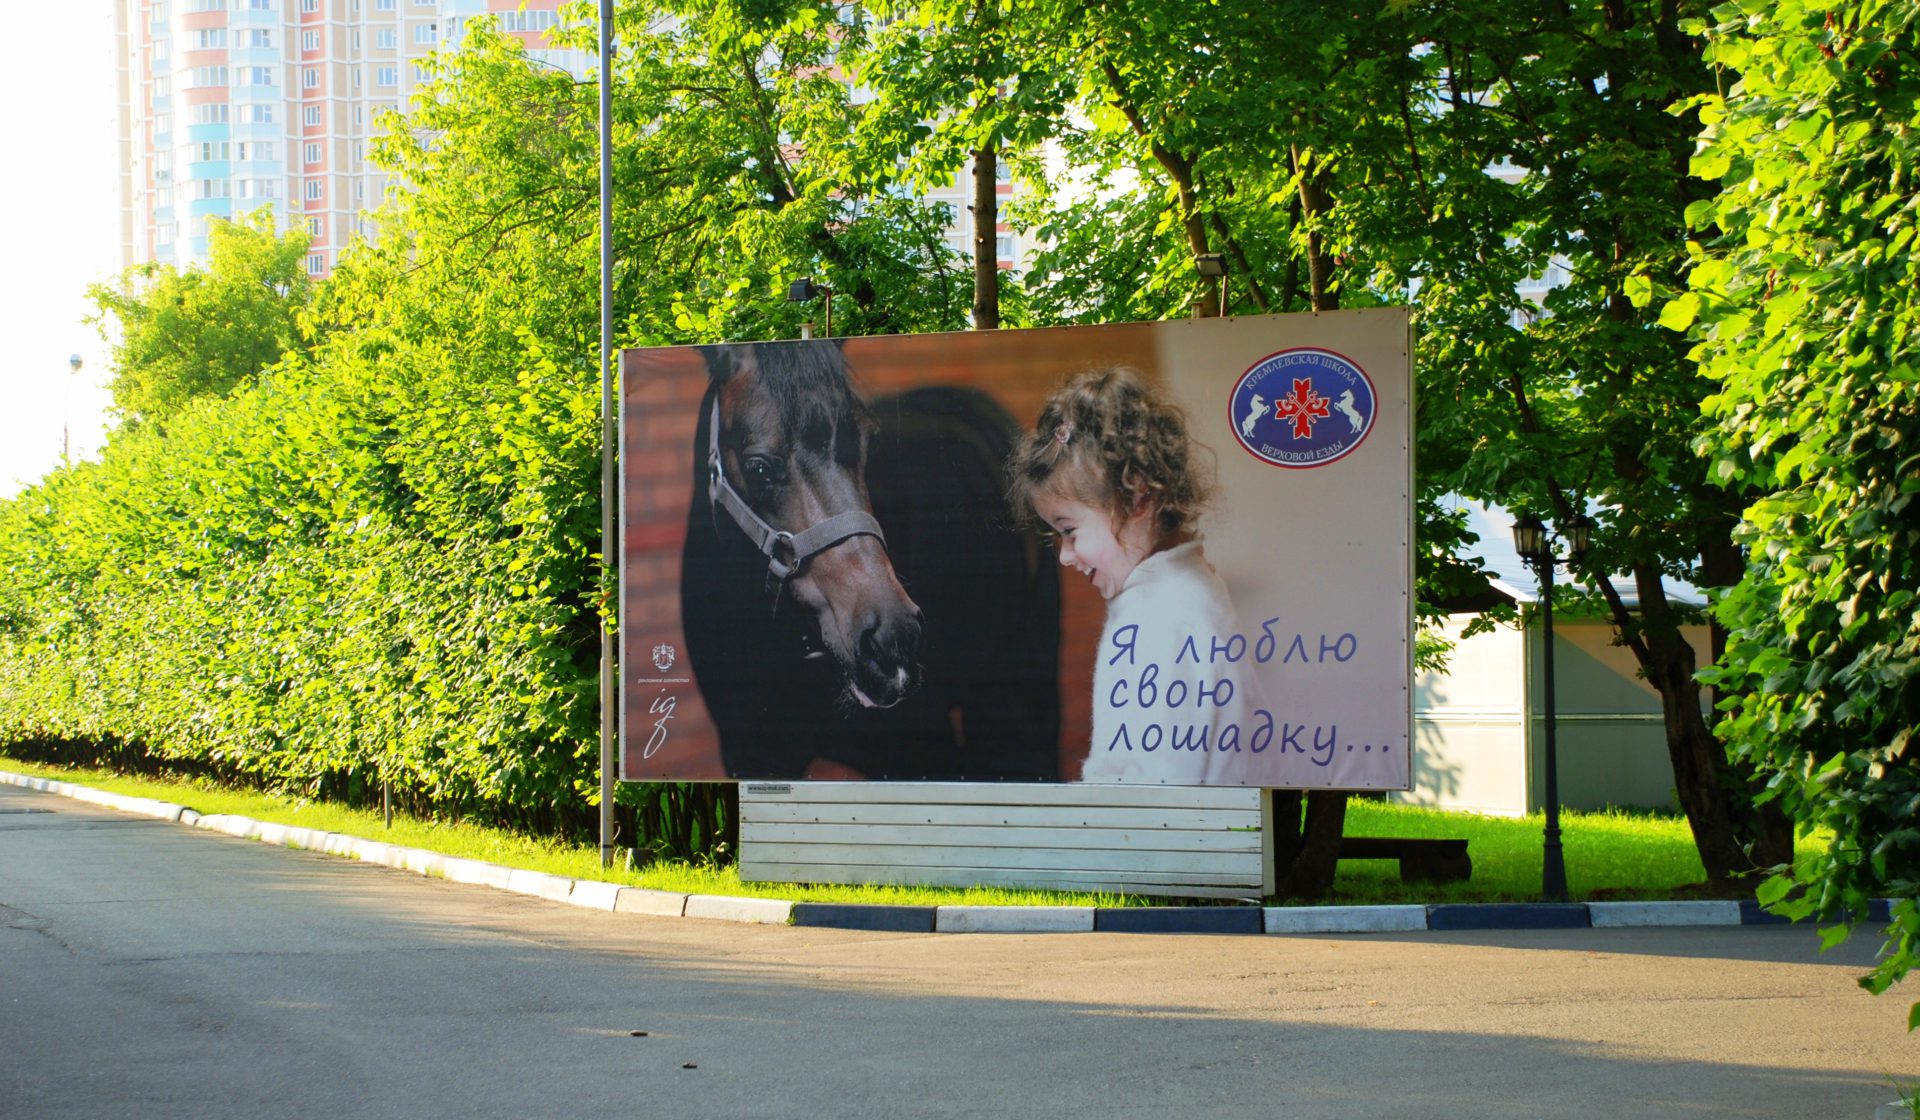 Реклама лошадок. Баннер с лошадьми. Рекламный баннер с лошадьми. Лошадь на билборде. Реклама КСК.